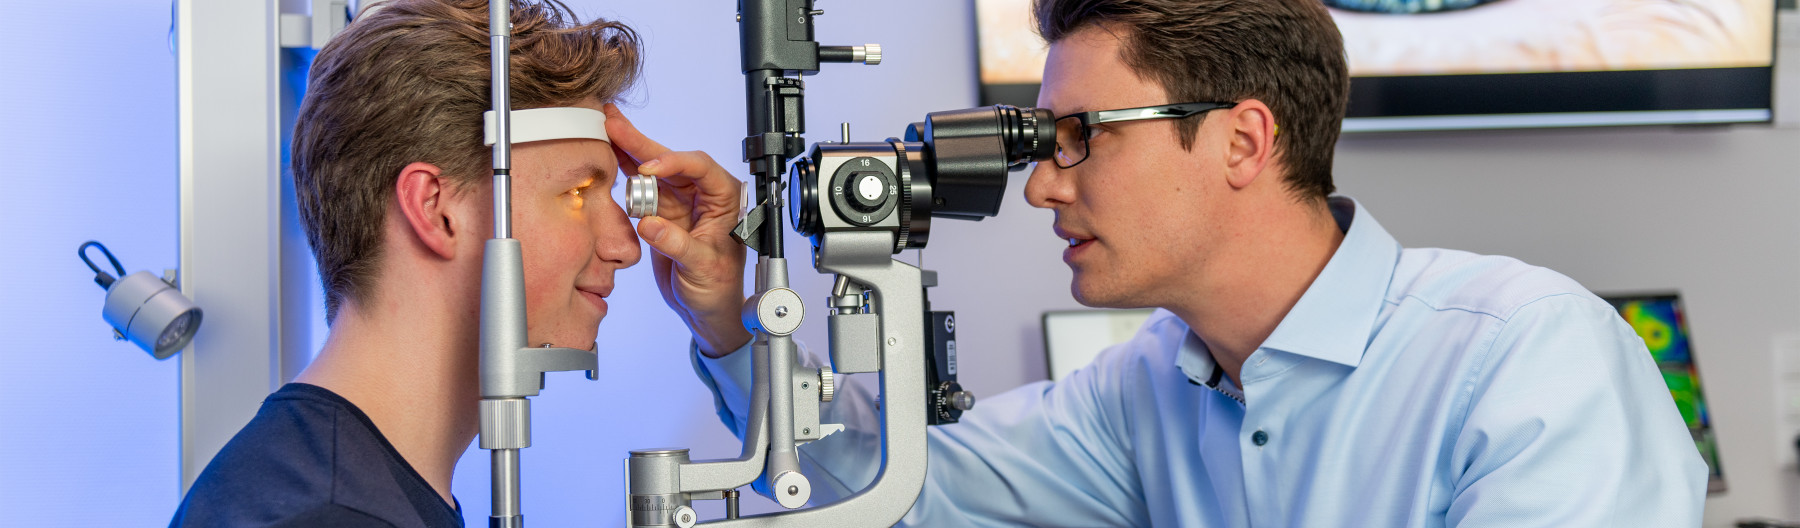 Augenarzt der Augenpartner Hoya untersucht einen jungen Patienten